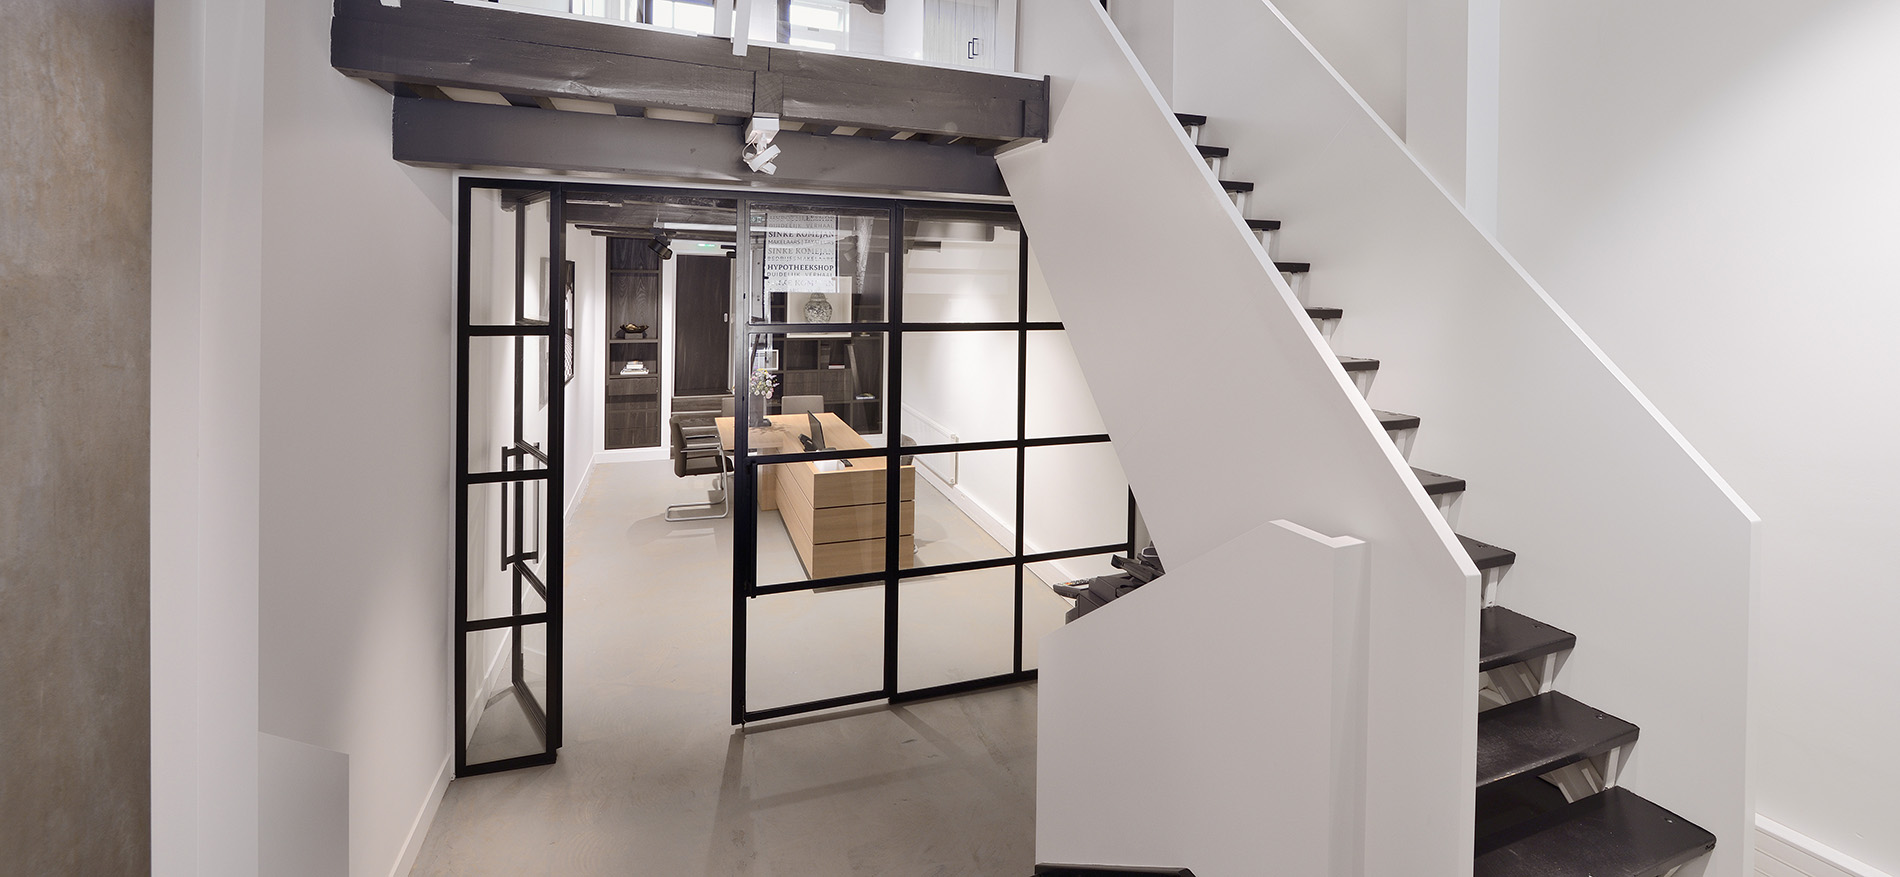 Sinke Makelaars – concept d’intérieur pour aménagement de bureau